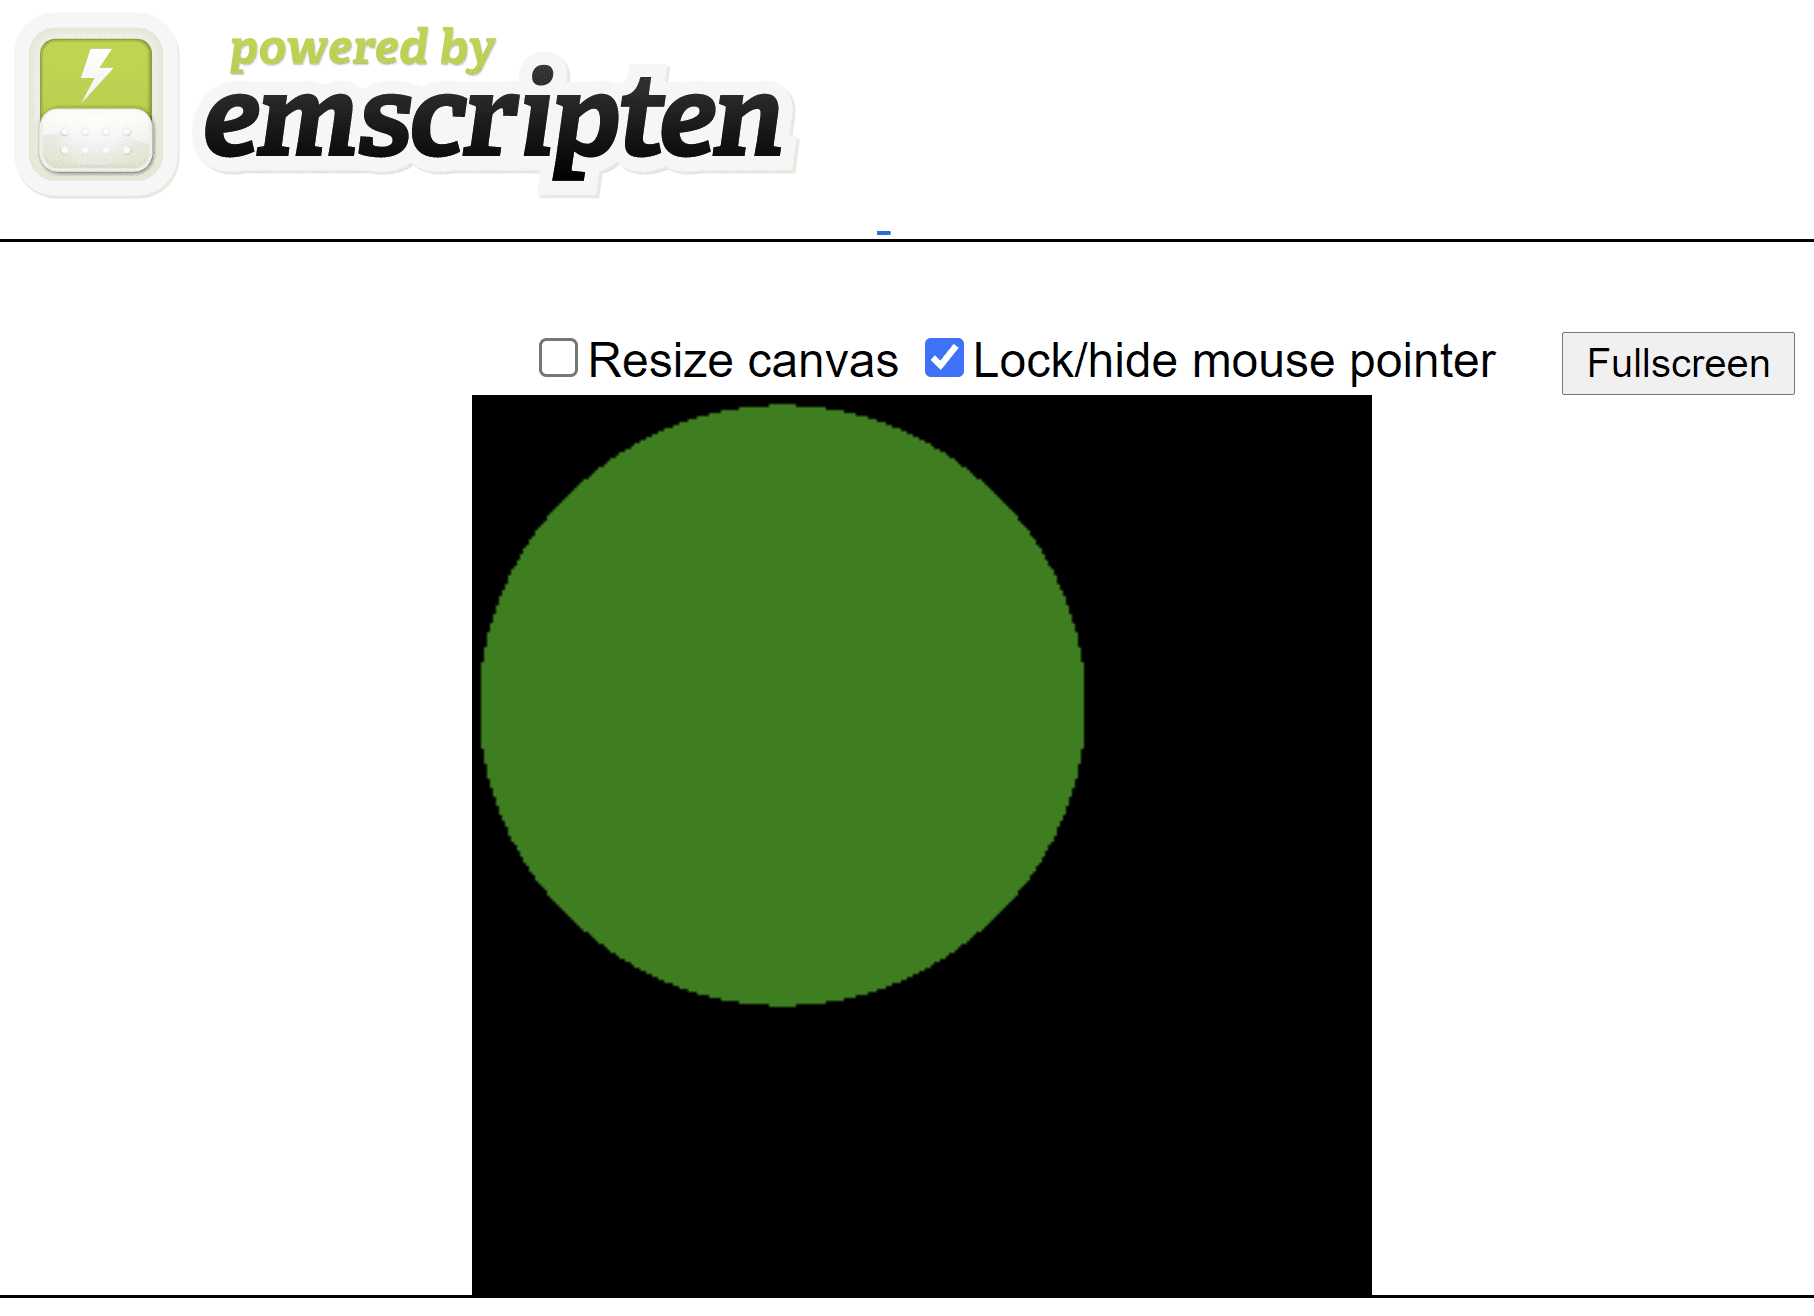 由插圖產生的 HTML 網頁，在黑色的正方形畫布上顯示綠色圓圈。